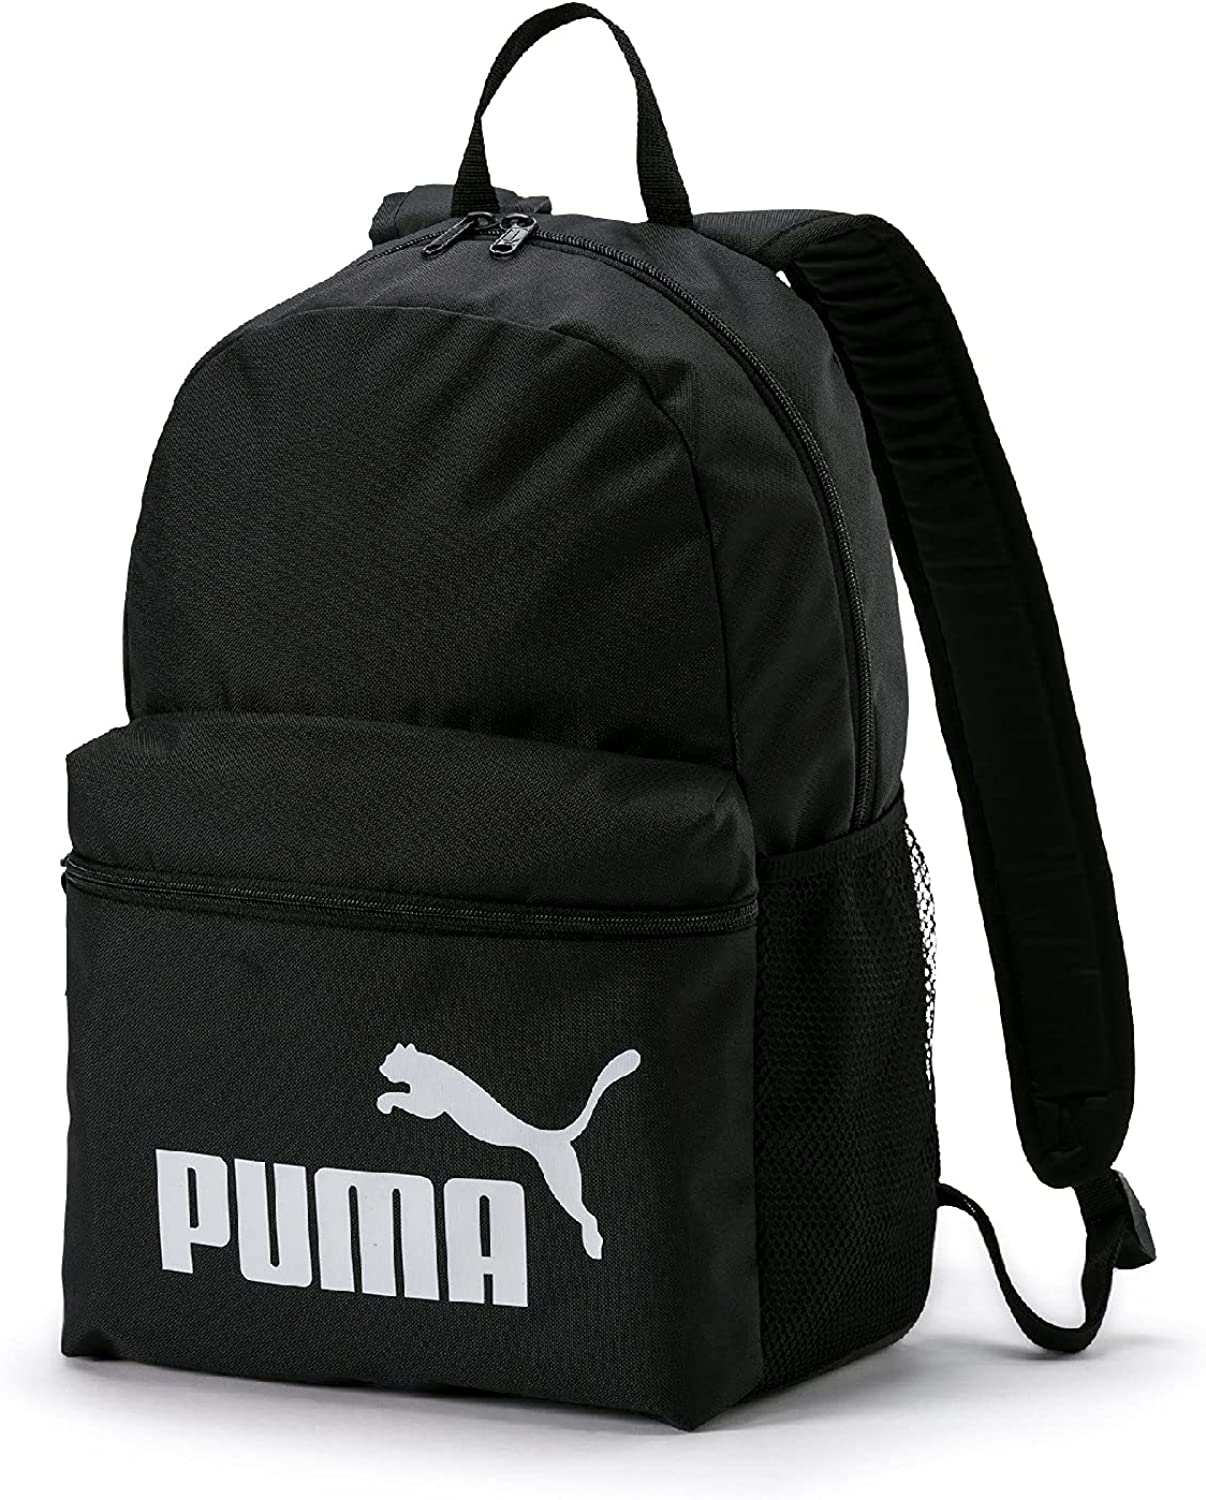 Recommandations de sac à dos : sac à dos Puma Phase